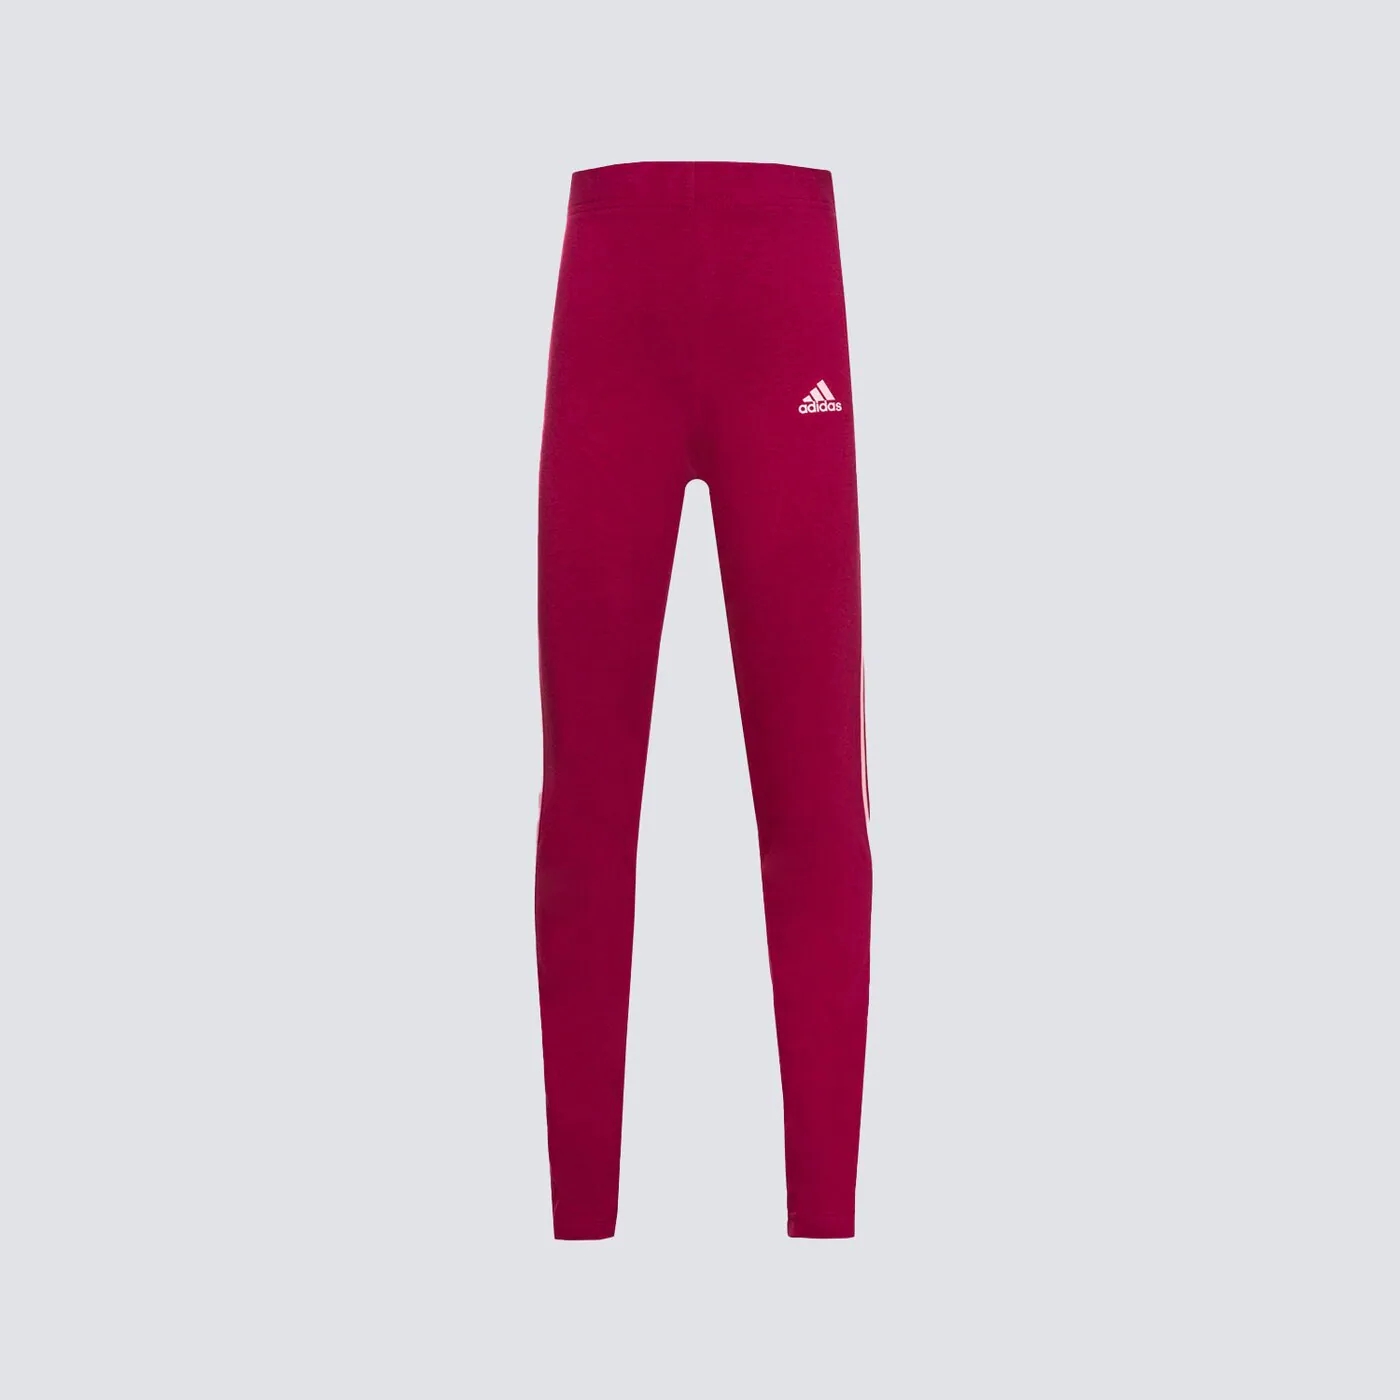 Леггинсы Adidas 3S для девочек, бордовый